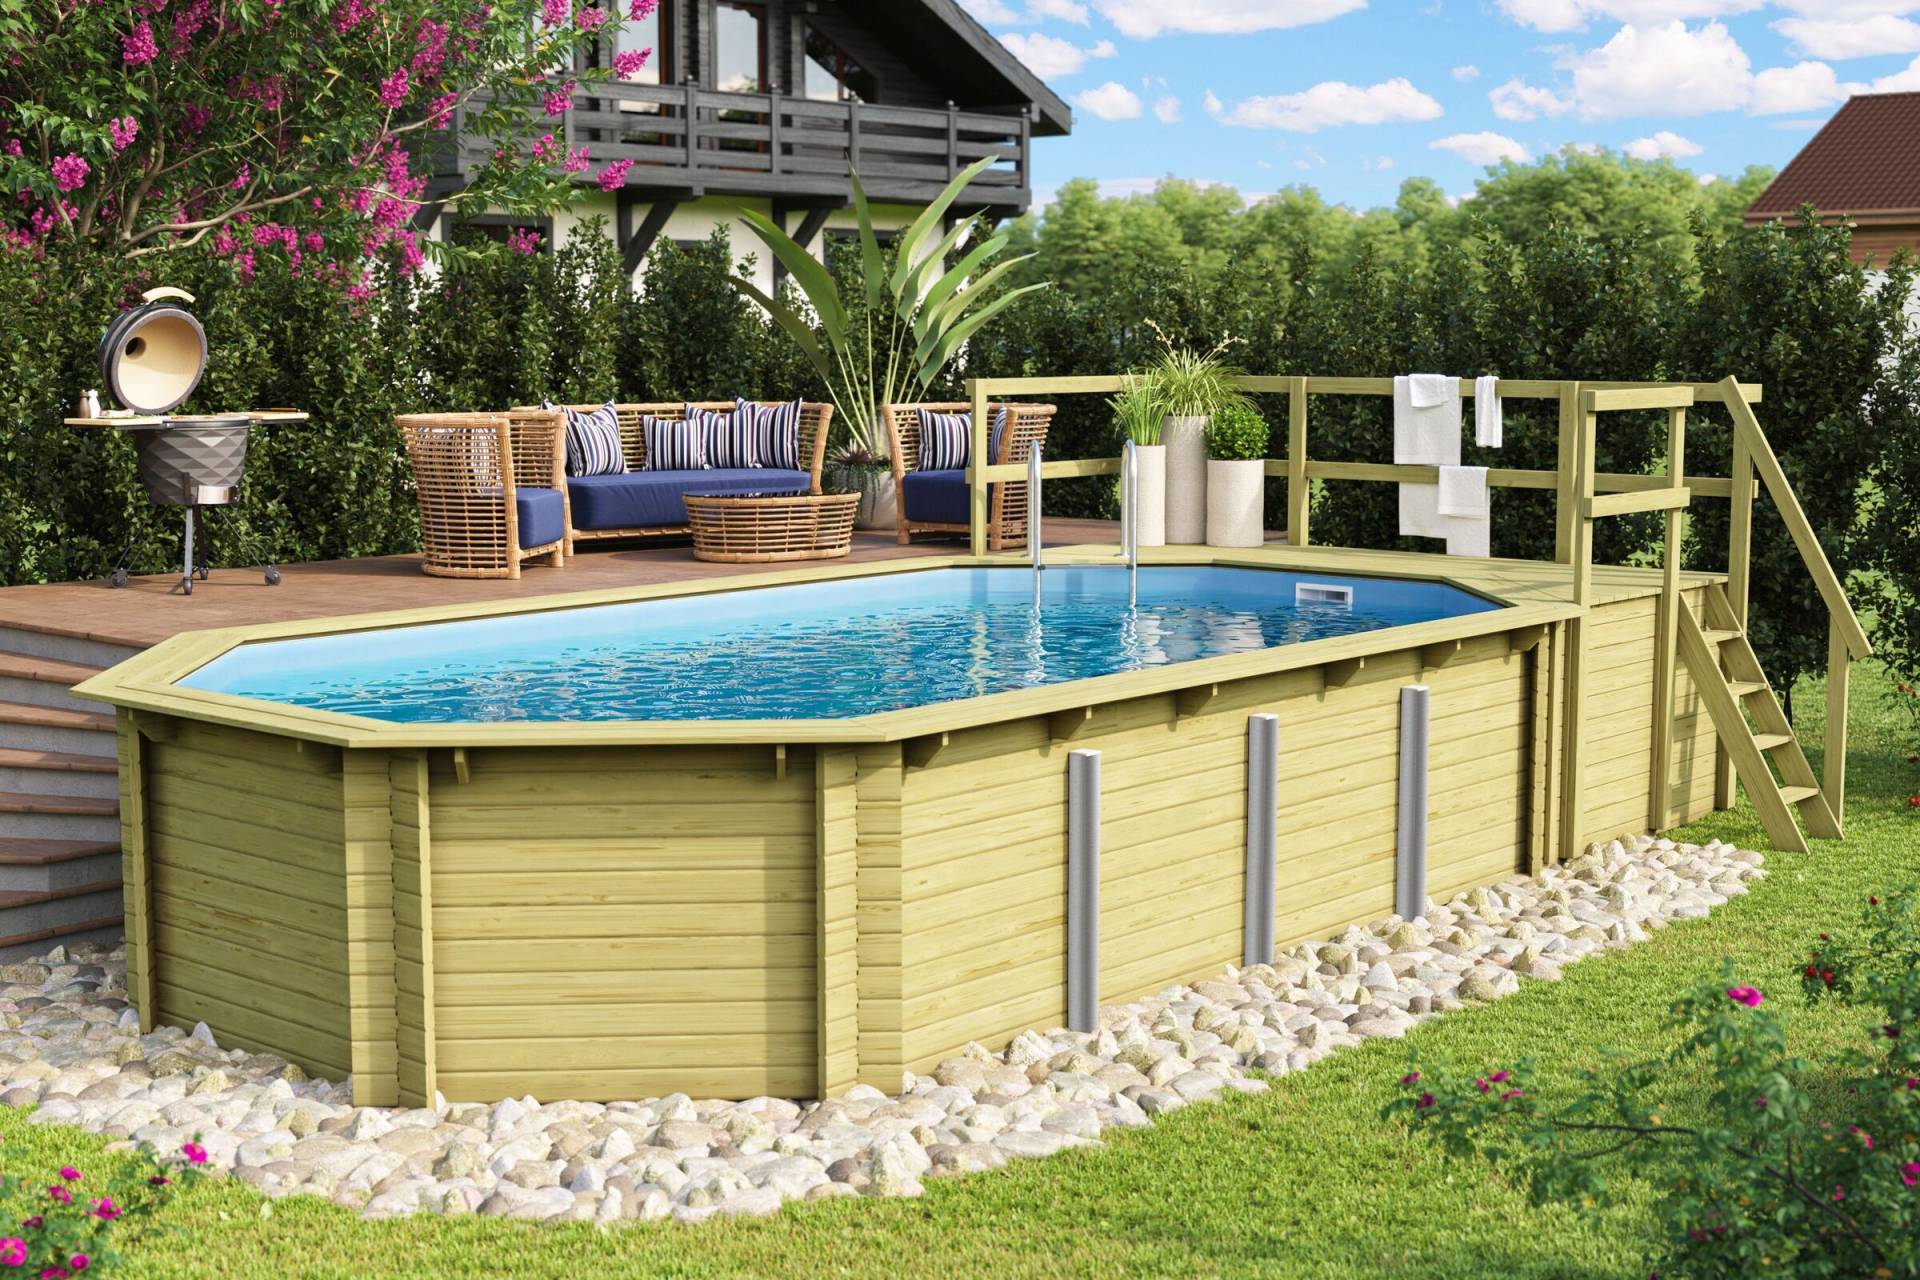 KARIBU Pool Modell 5 Variante D, naturbelassen, Fichtenholz, 357x657x124 cm, inkl. Deck, Terrasse, Treppe und Geländer von Karibu